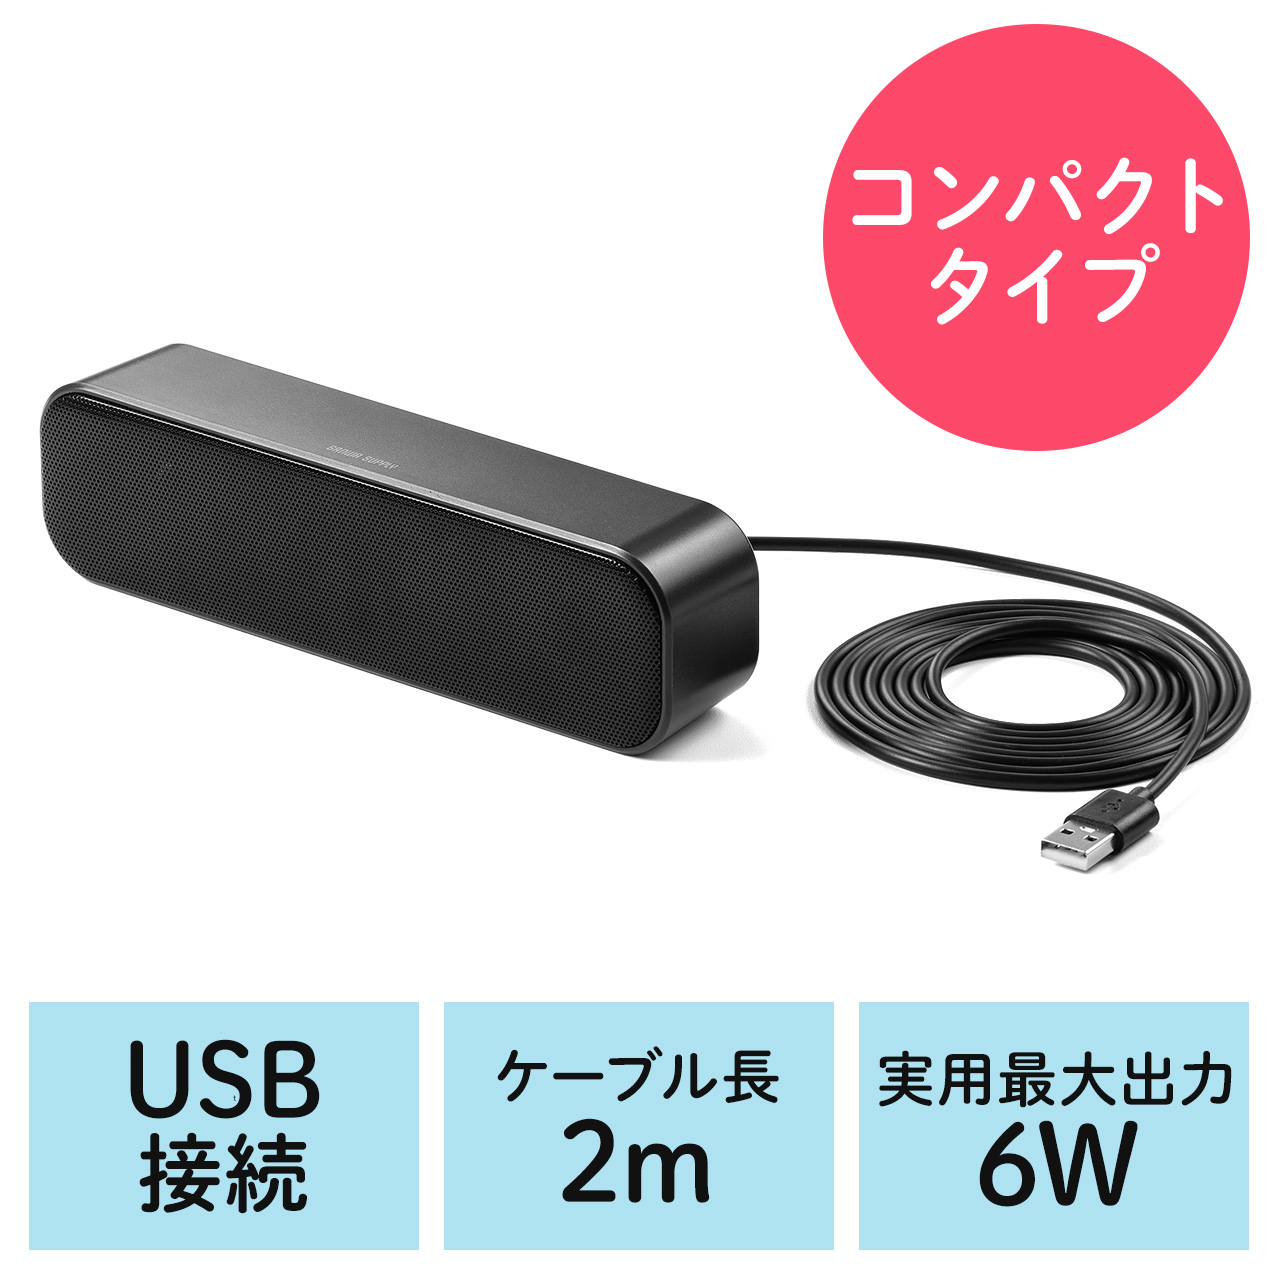 USBスピーカー 6W出力 小型 サウンドバー型 PCスピーカー 2mケーブル 400-SP109 通販ならサンワダイレクト